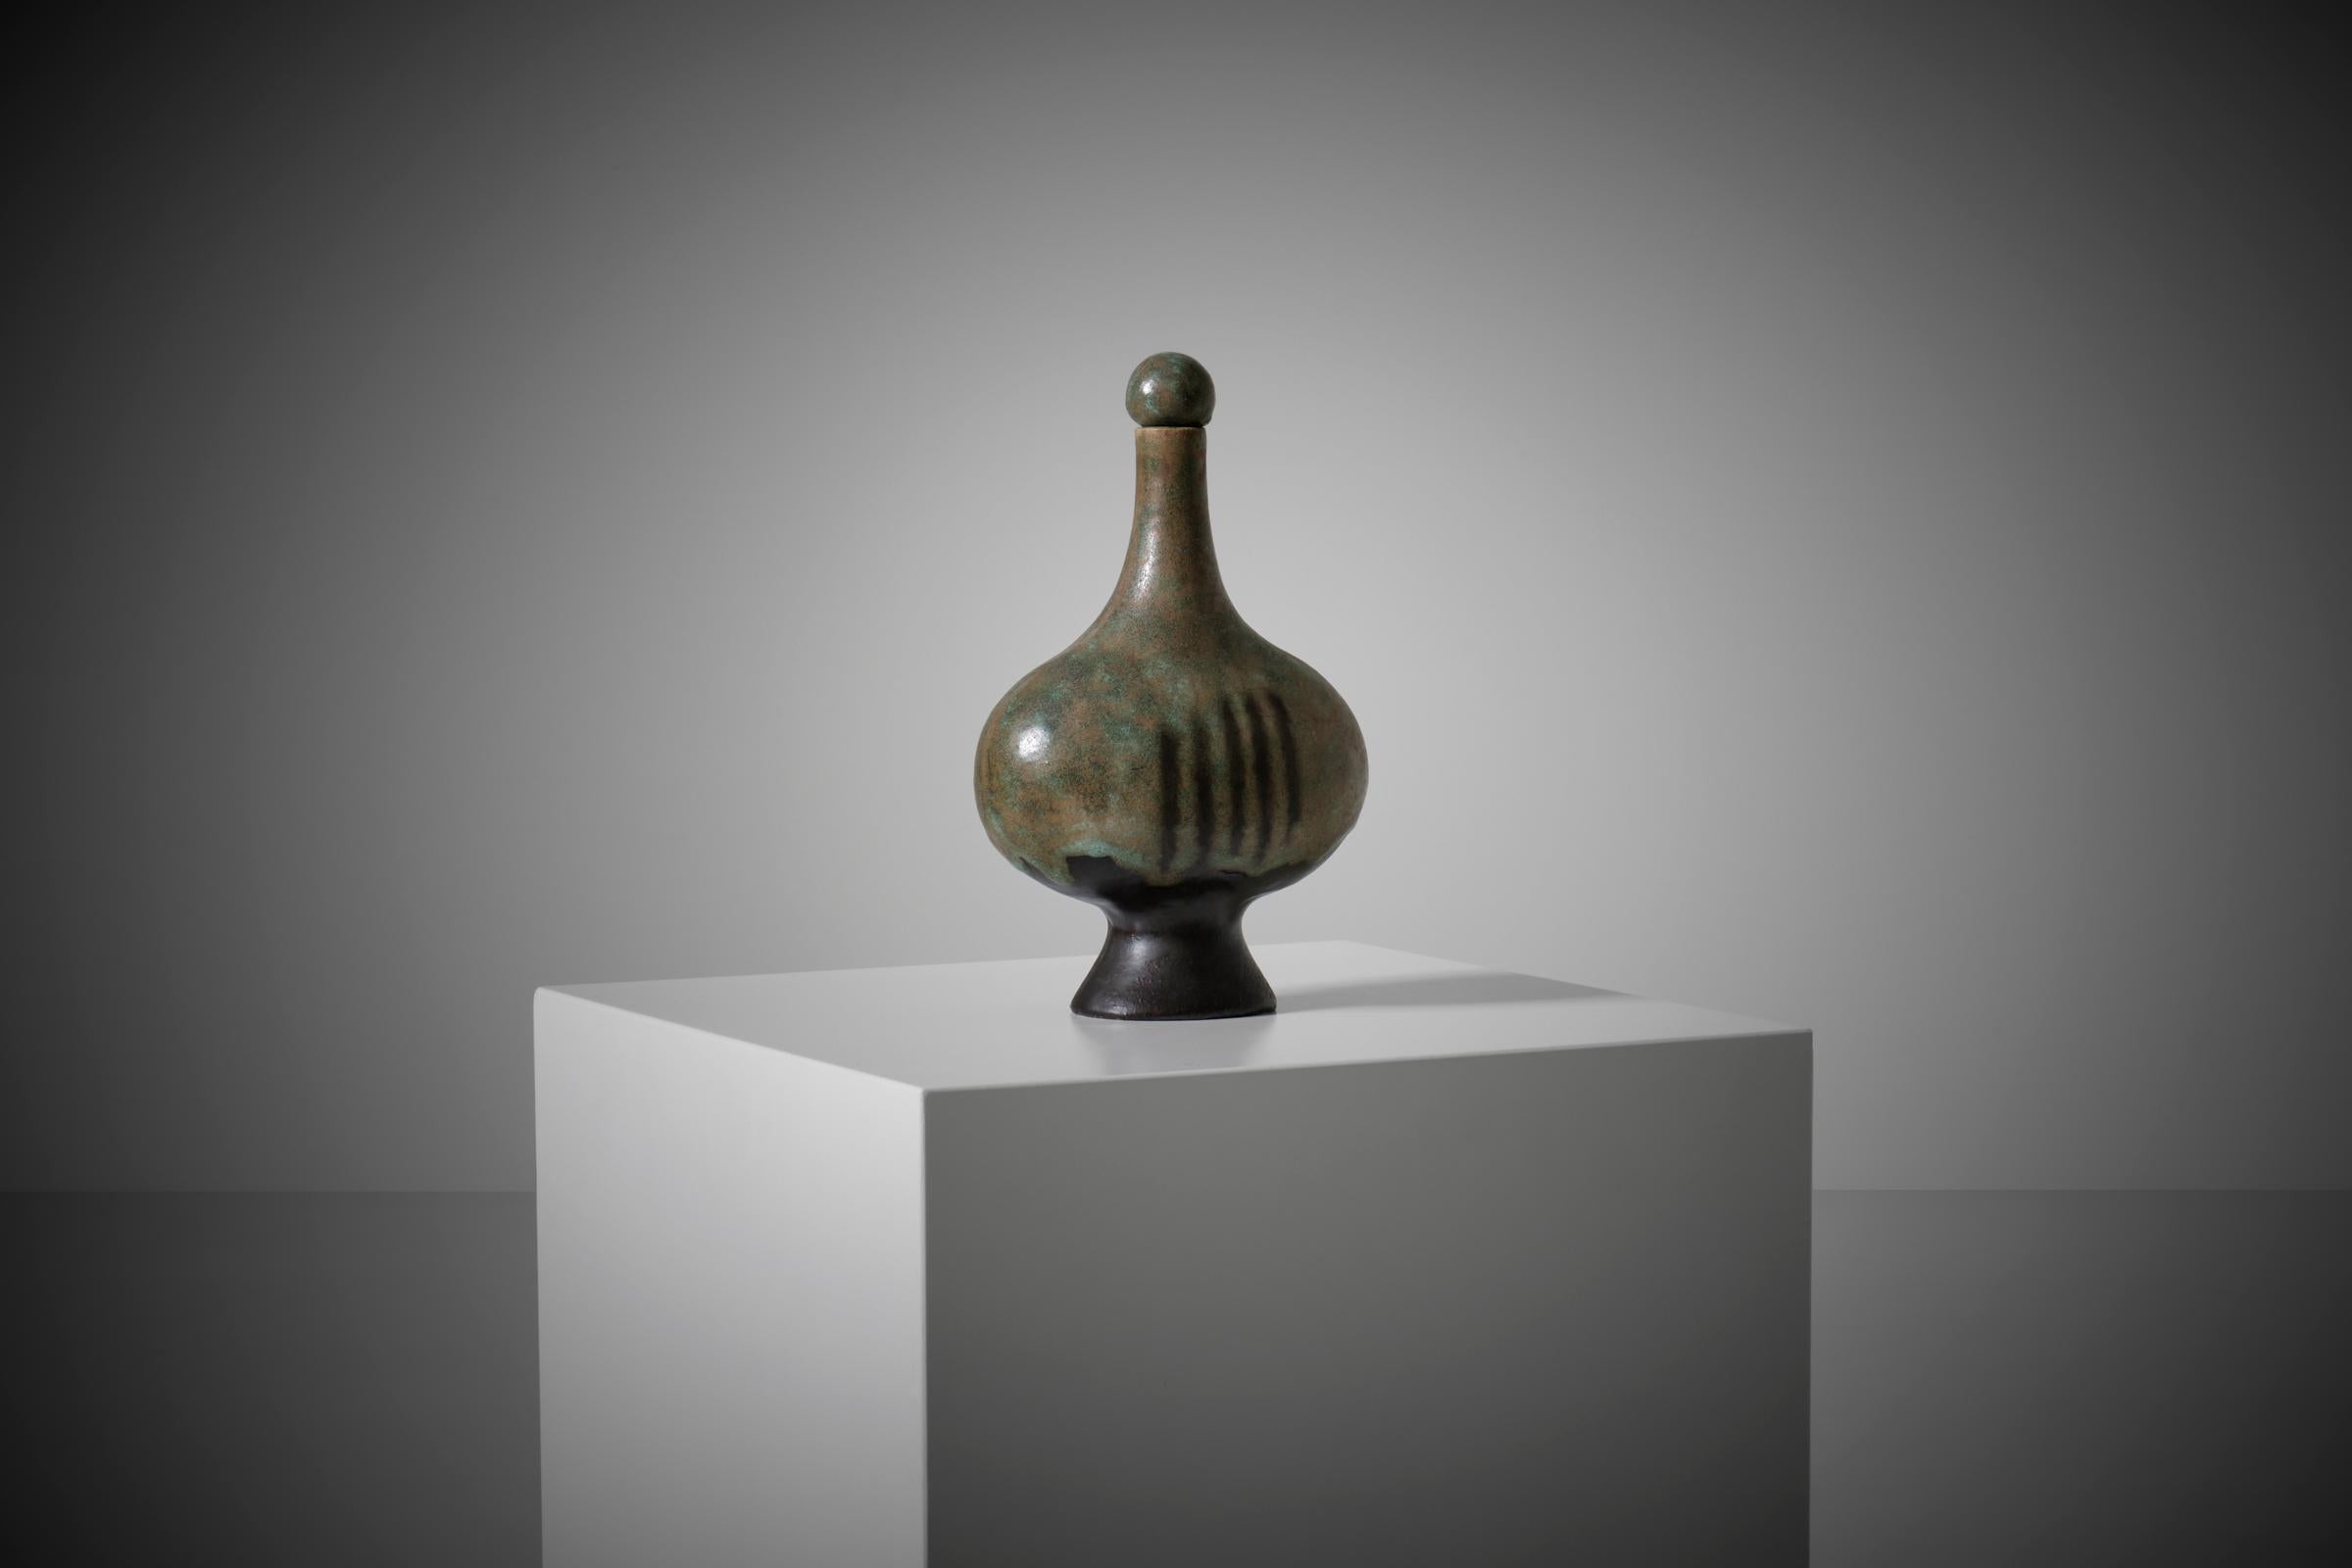 Vase bouteille en céramique sculpturale de Bruno Gambone (1936 -2021), Italie années 1960. Magnifique vase en forme de bouteille organique avec son CAP original. Sa forme irrégulière le rend intéressant sous tous les angles. Le vase a une surface